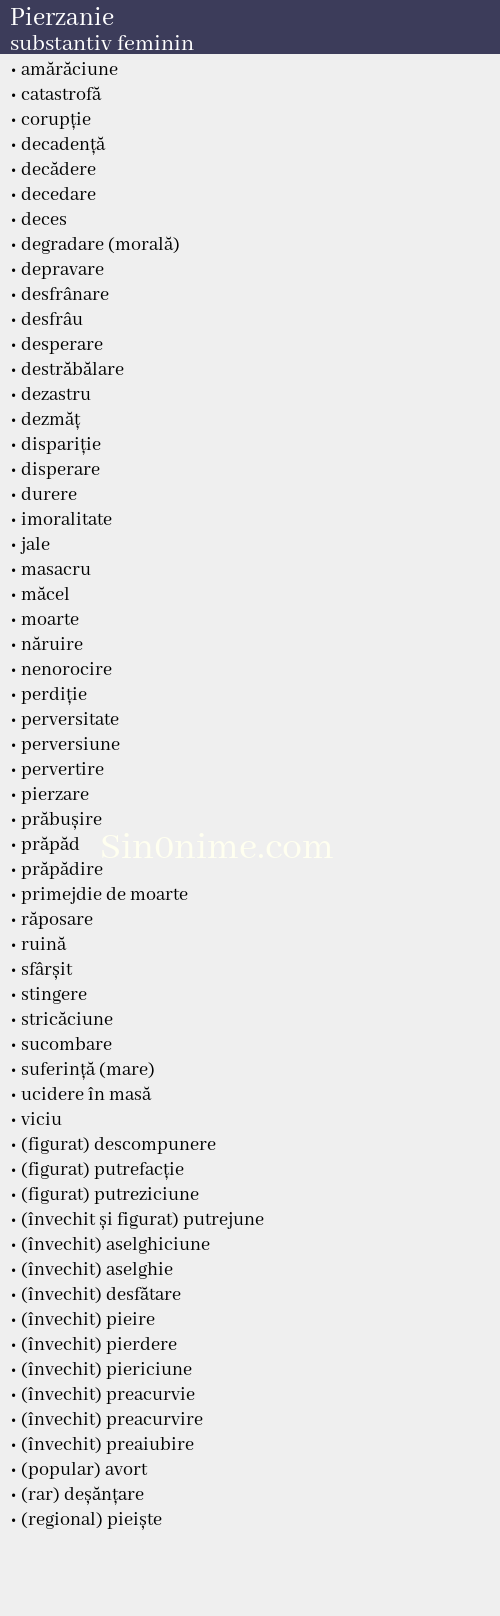 Pierzanie, substantiv feminin - dicționar de sinonime